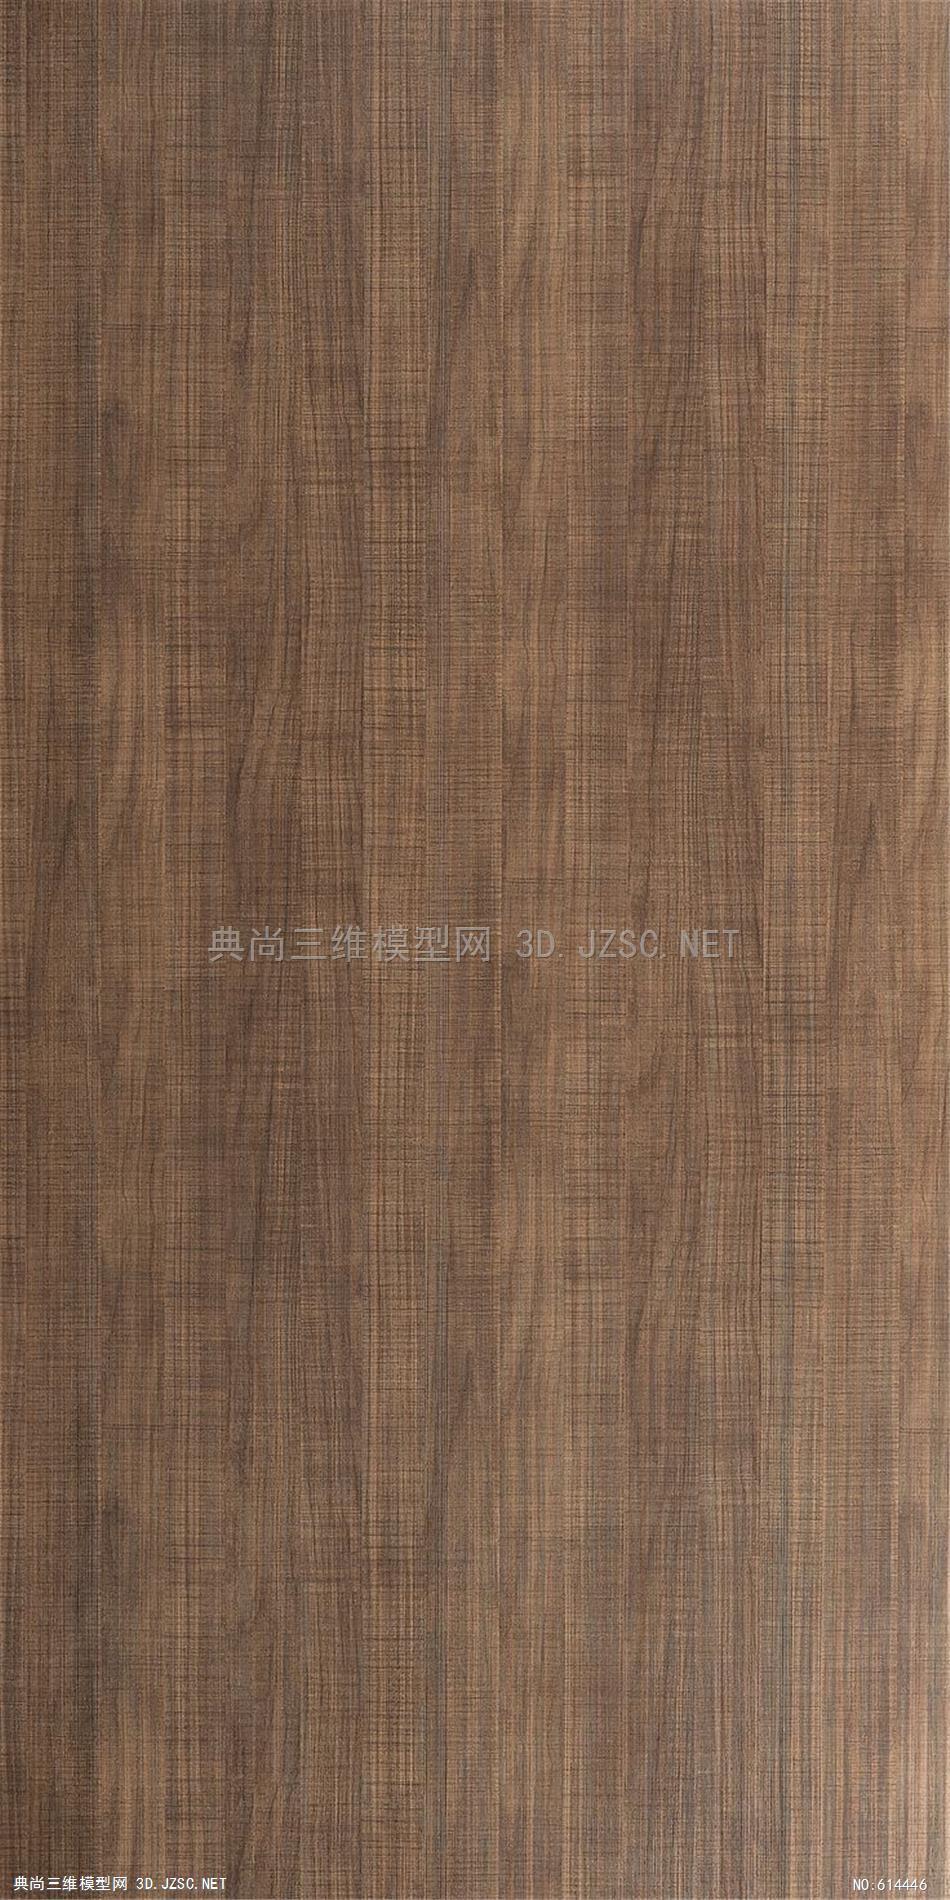 木饰面木纹木材高清材质贴图303材质贴图